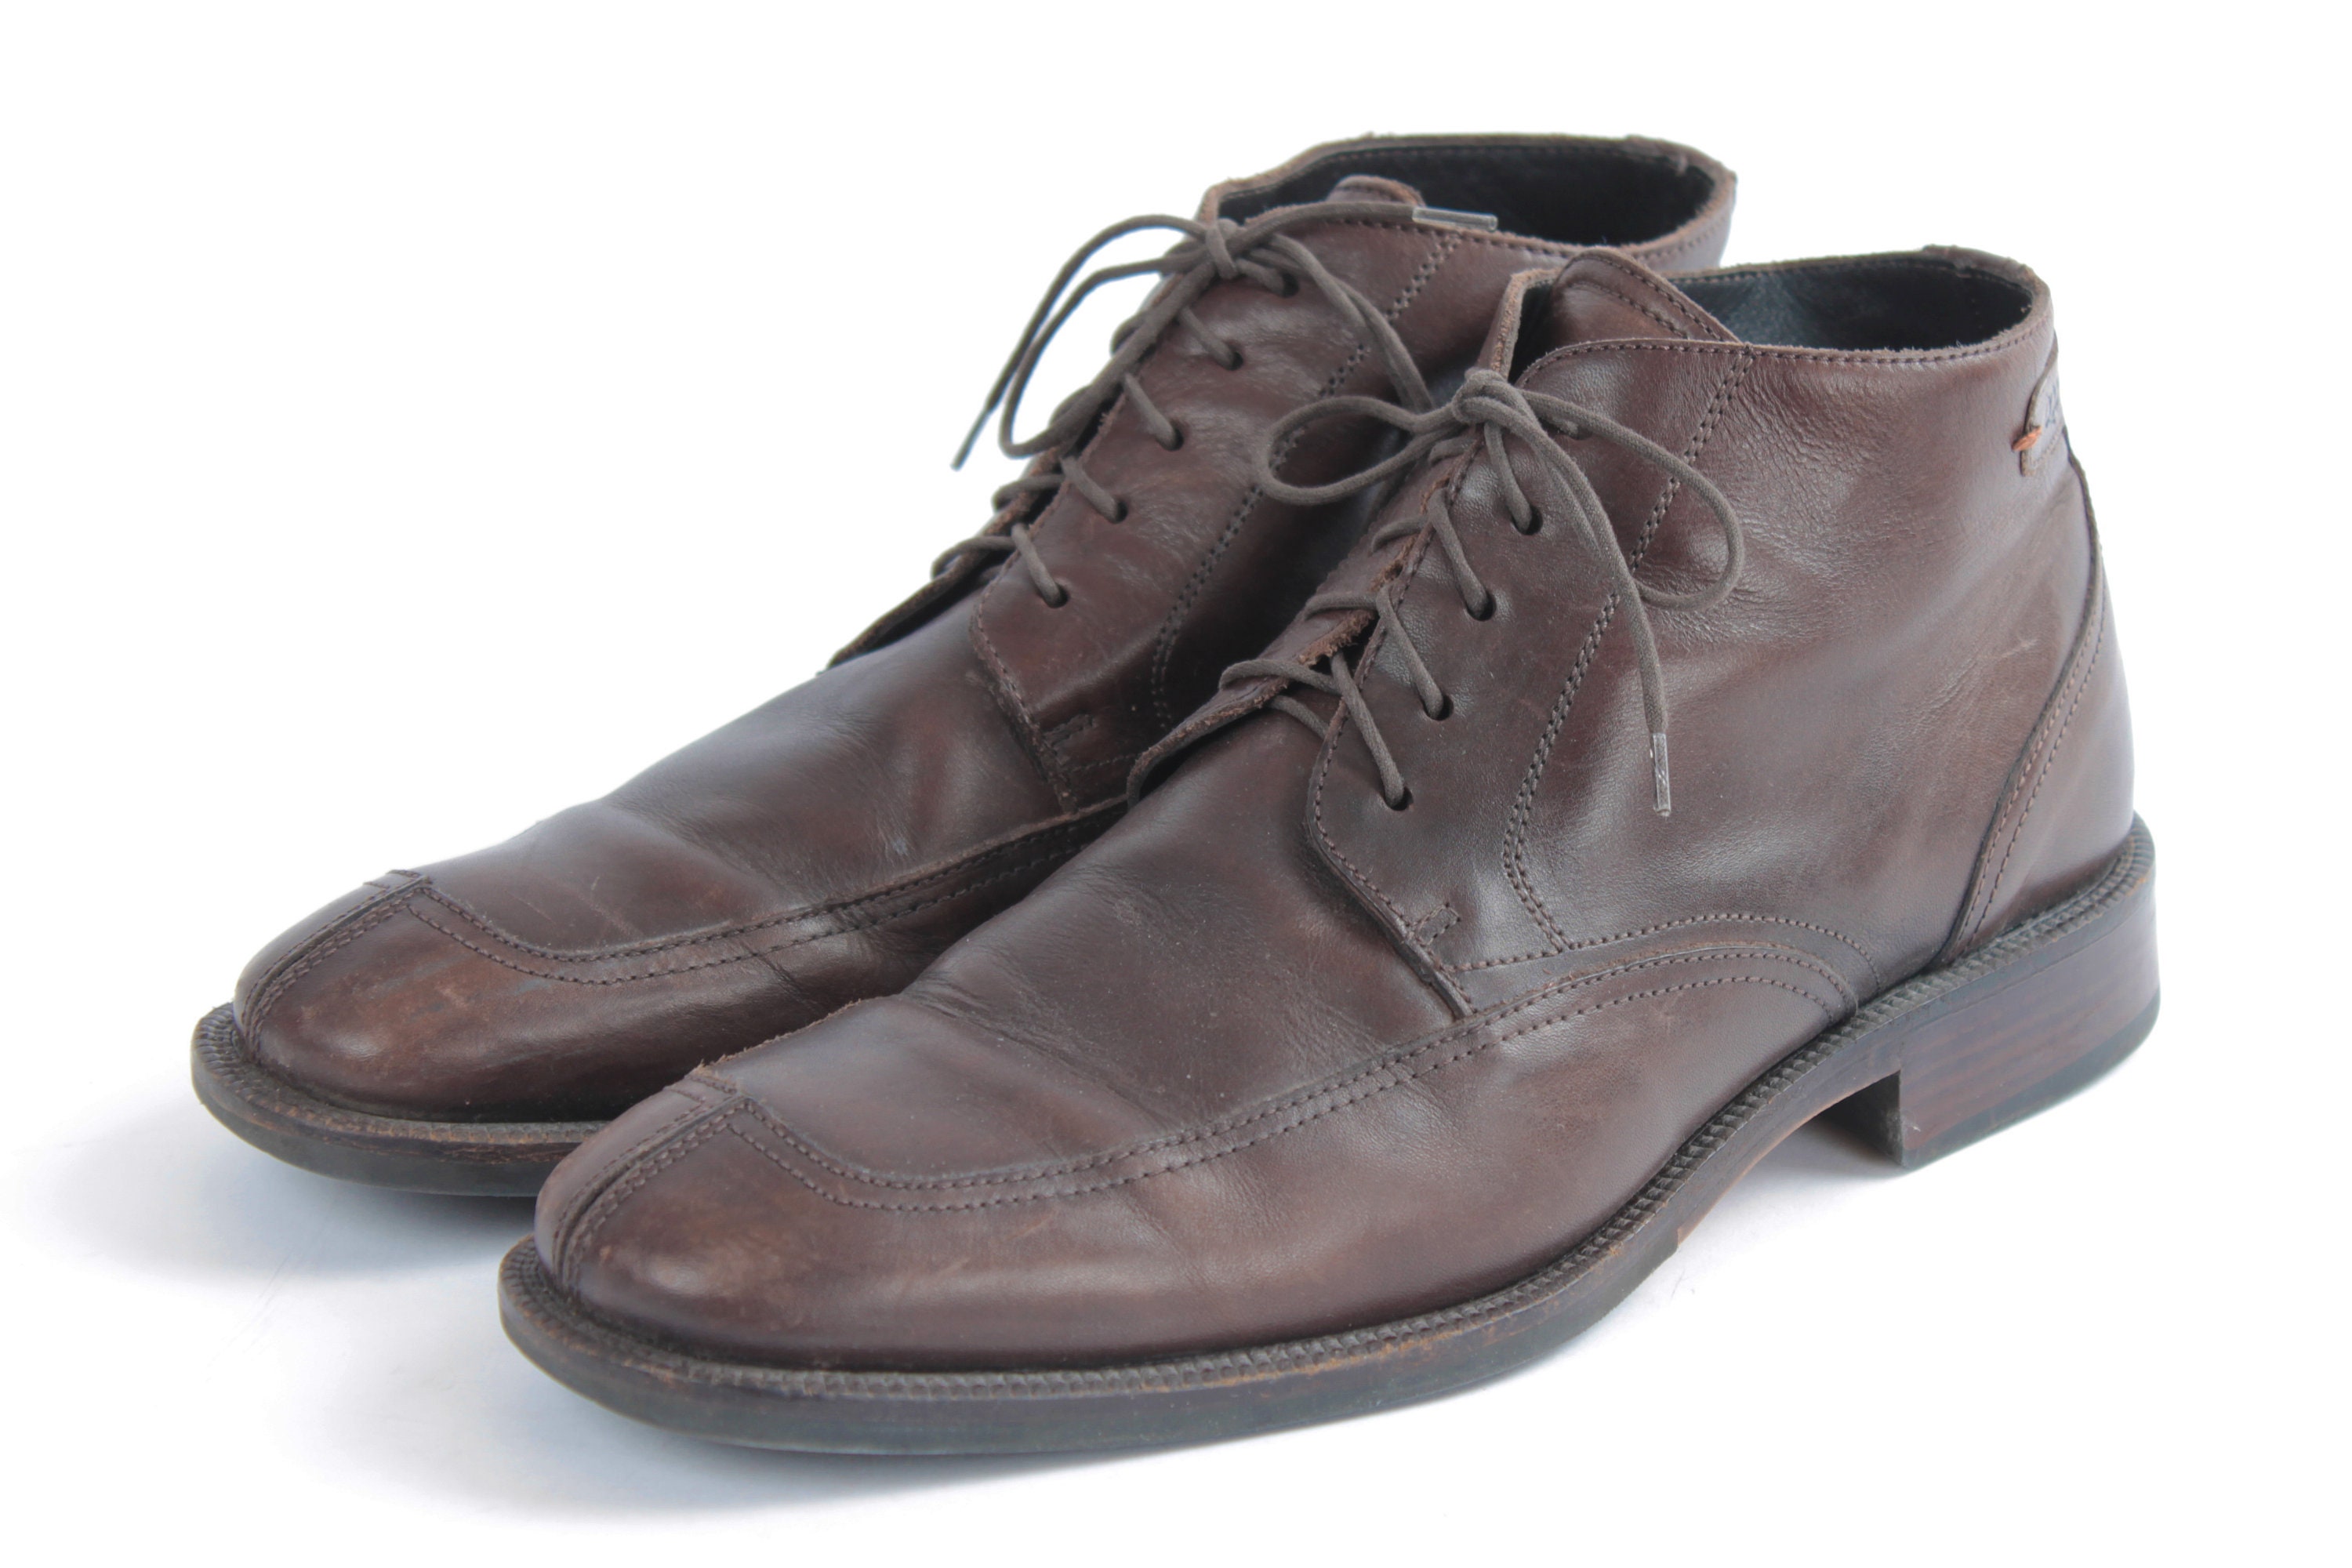 US9 Vintage 90s Brown Leather Elegant Ankle Boots for Men / | Etsy